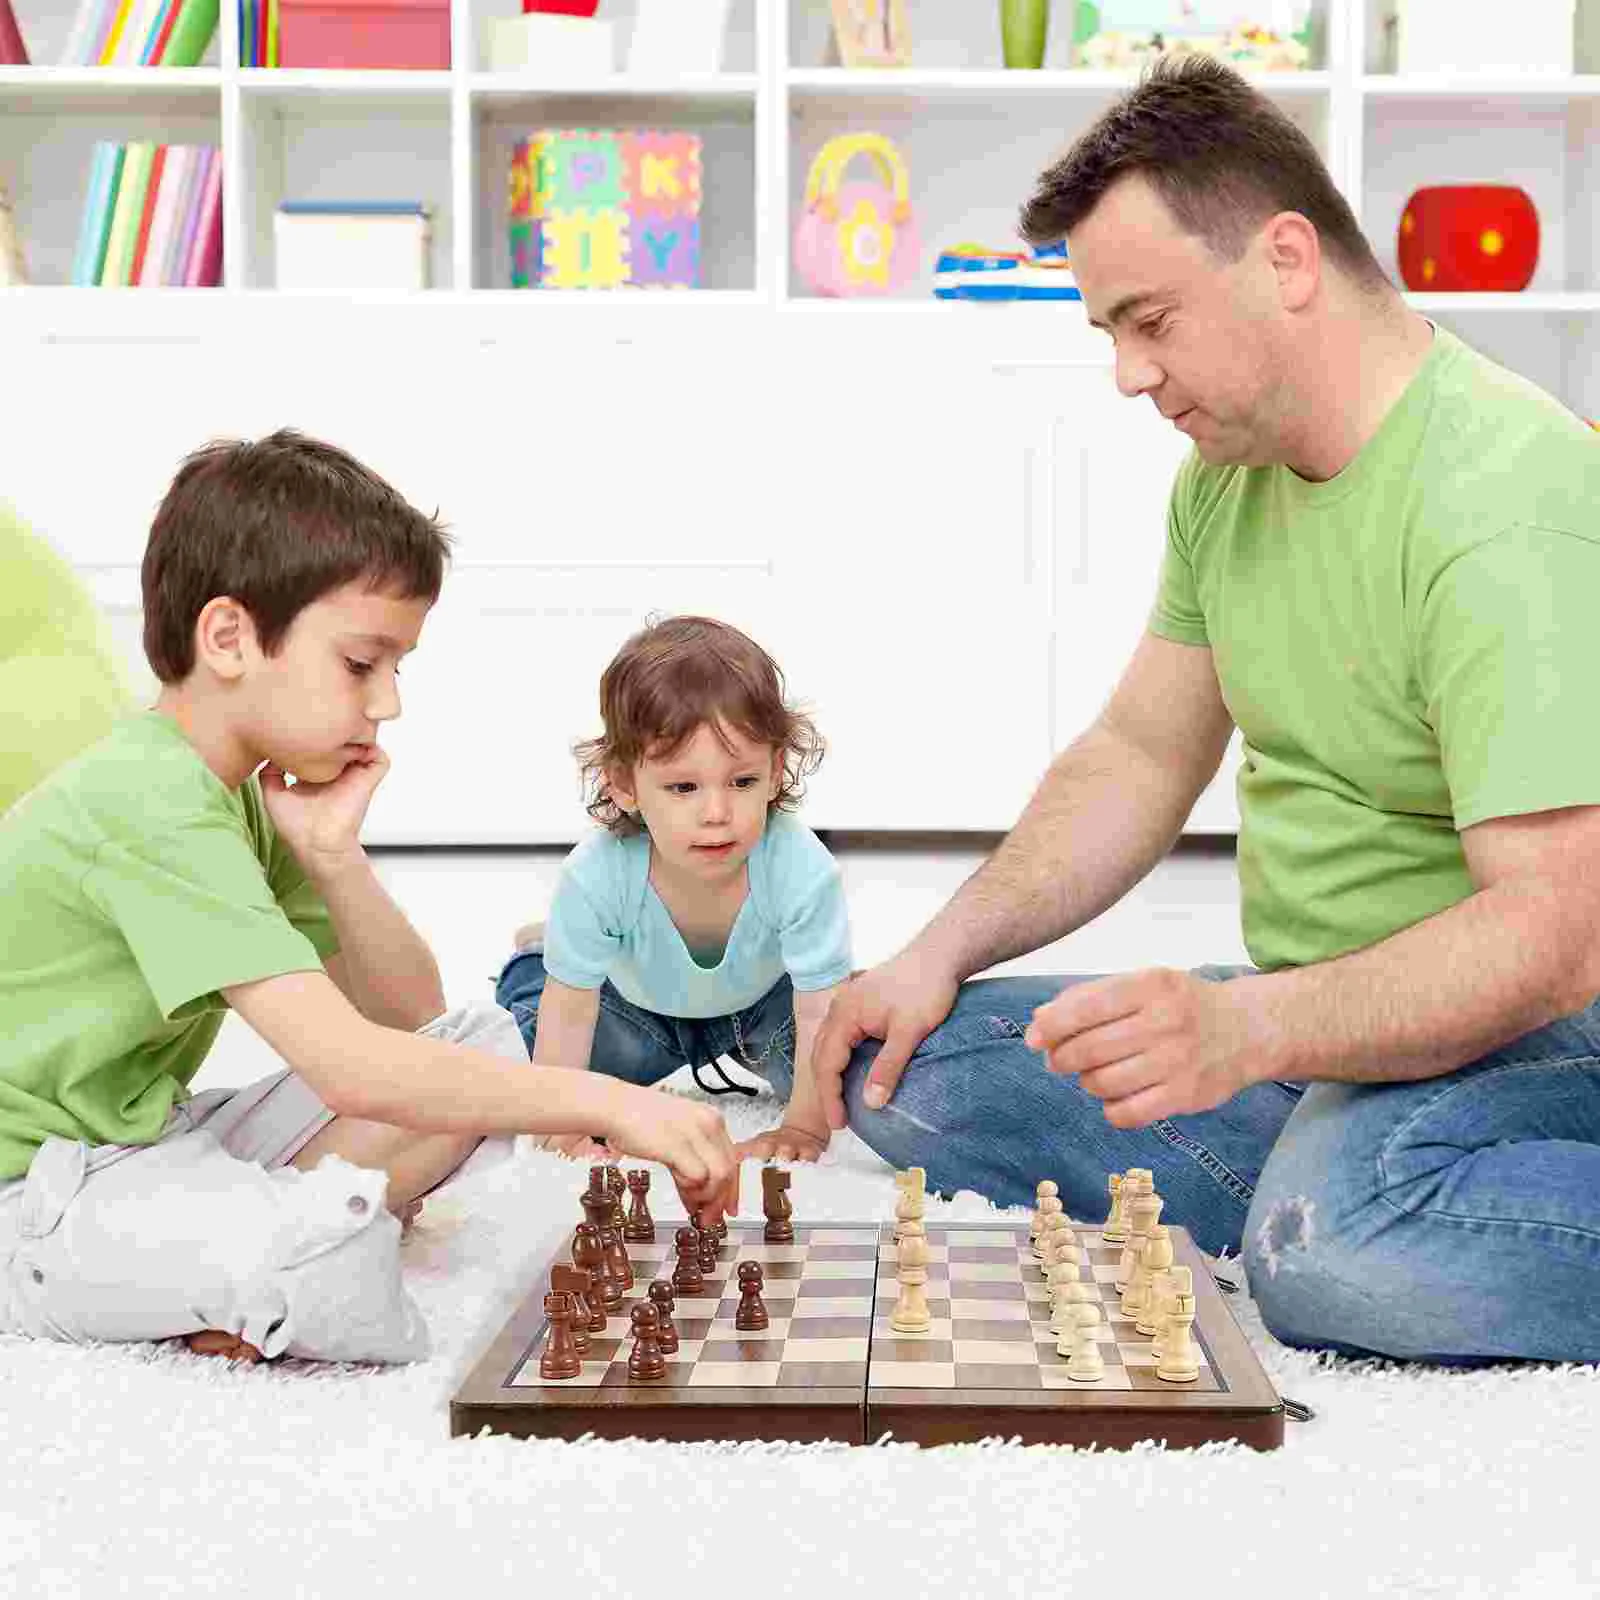 Папа играет в шахматы. Семейная игра в шахматы. Дети с родителями играют в шахматы. Игра в шахматы с папой. Родители играют в шахматы с детьми.